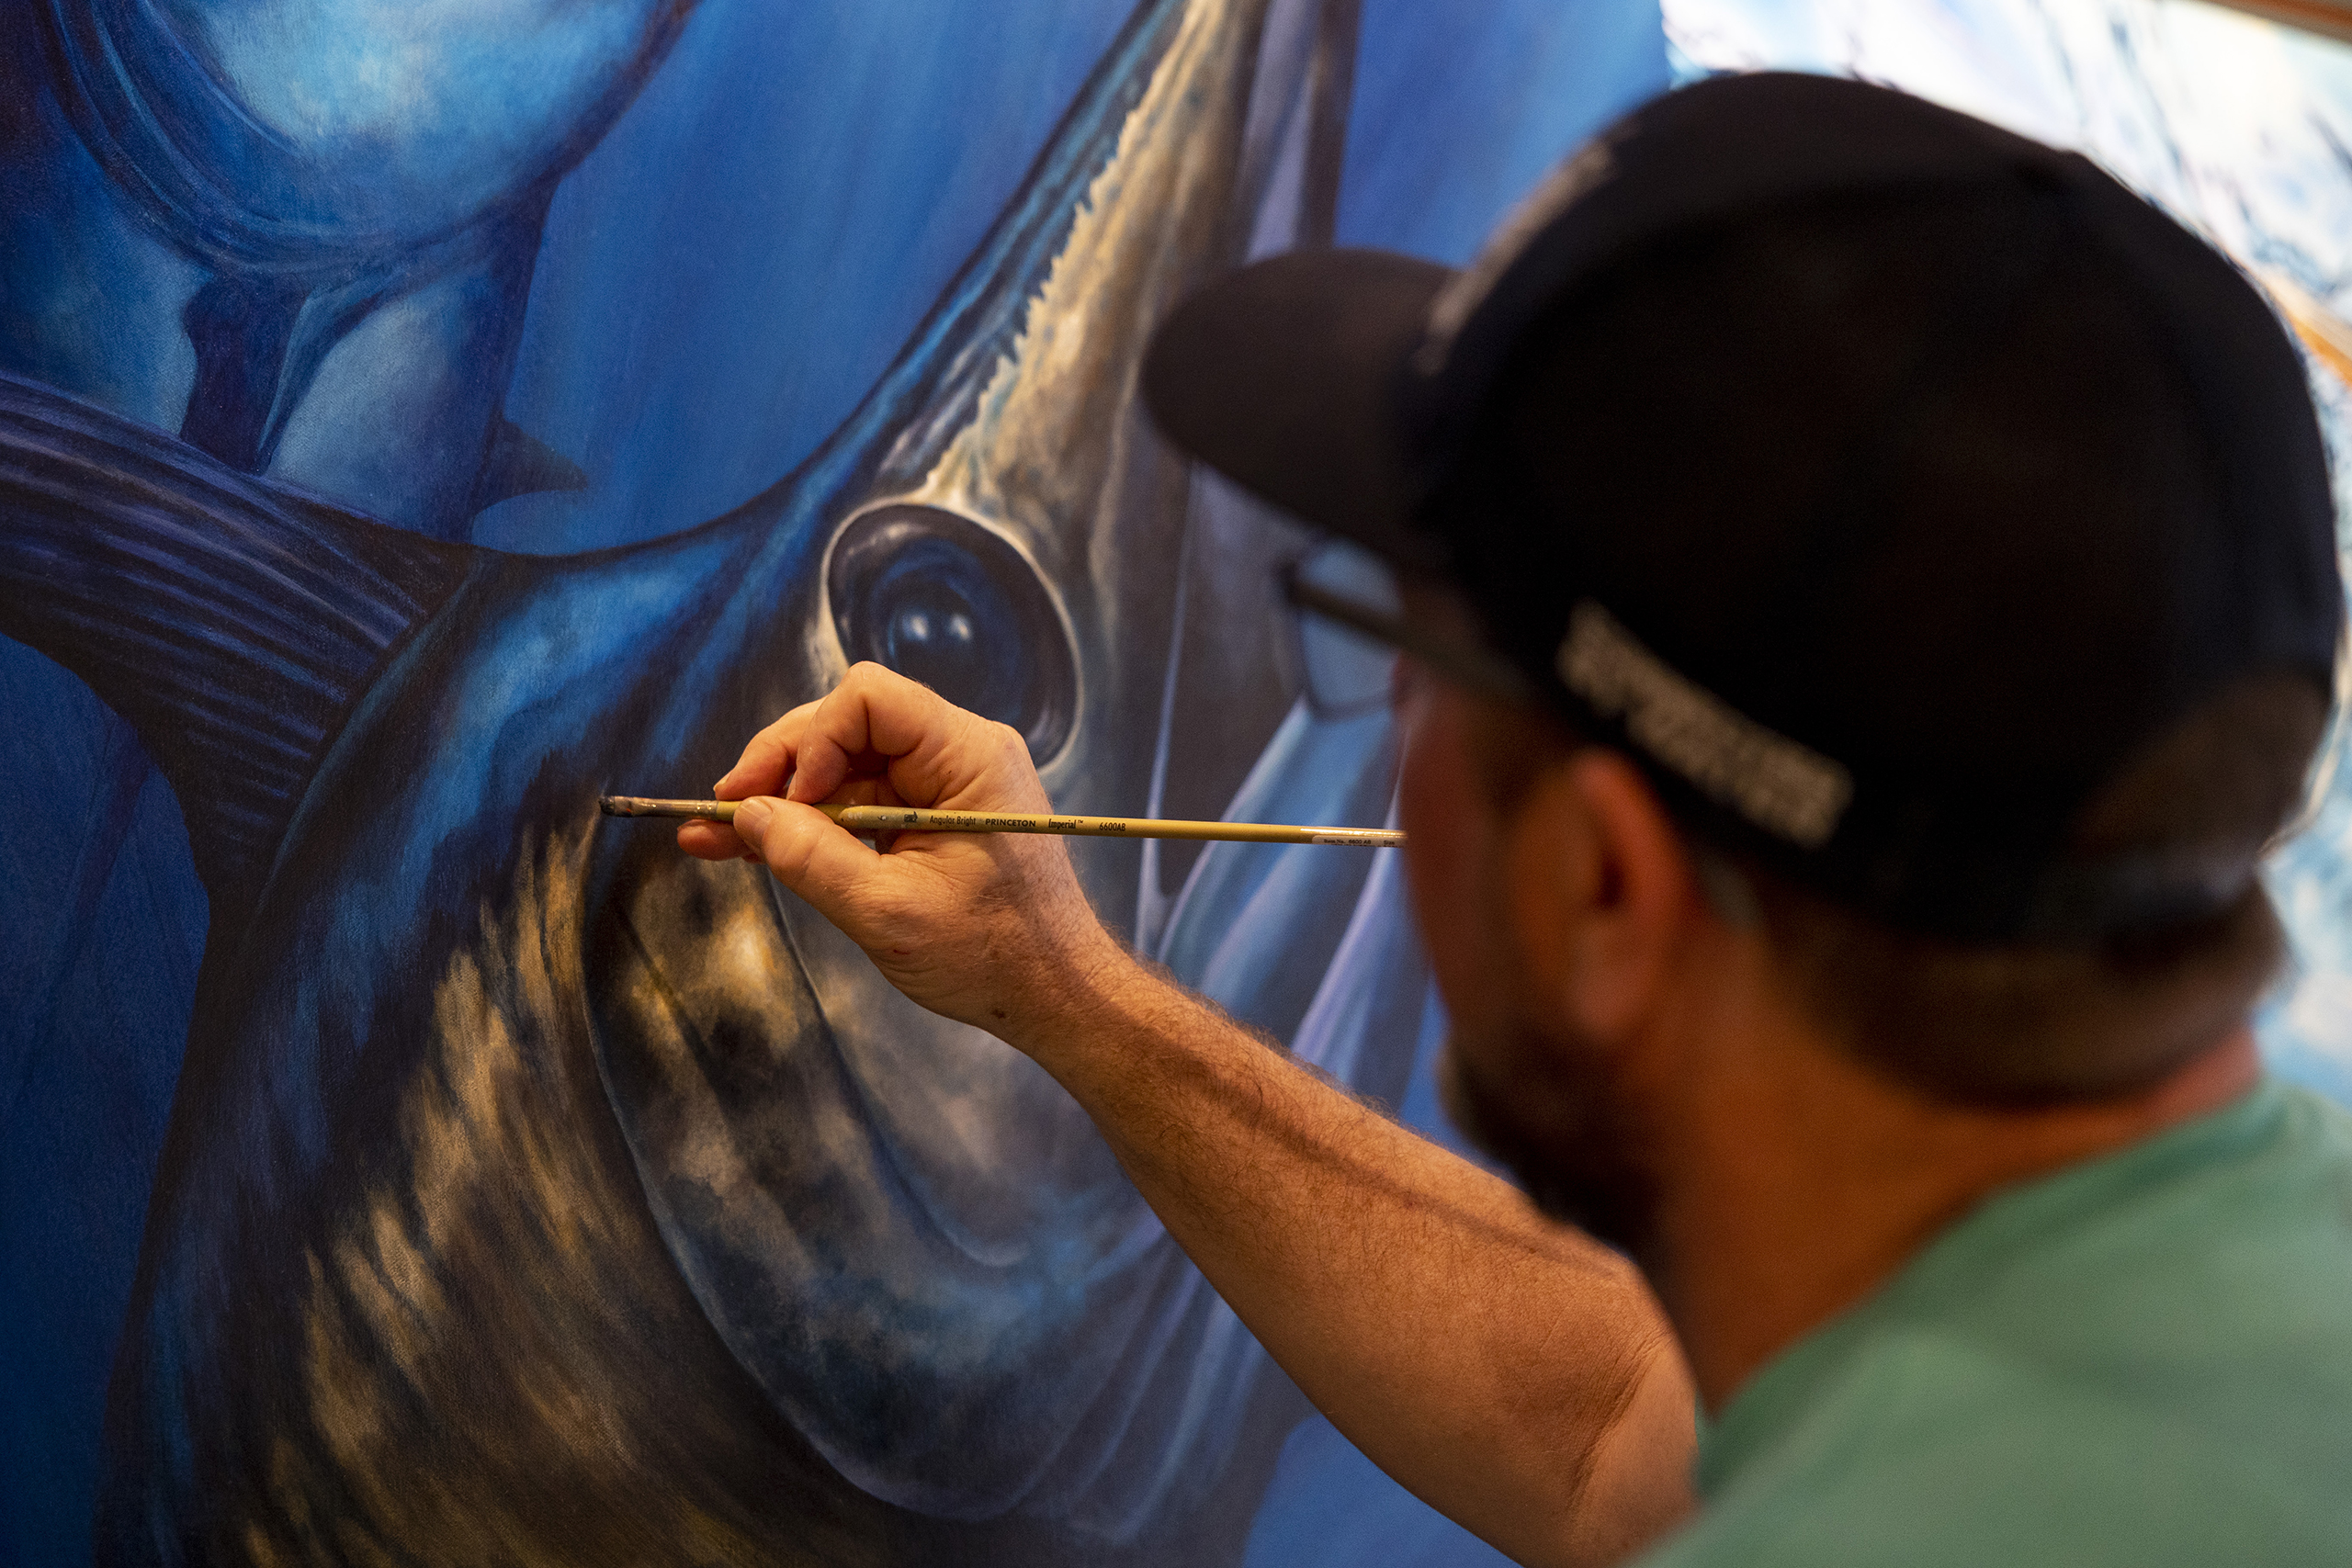 Dennis Friel paints details on a fish mural.